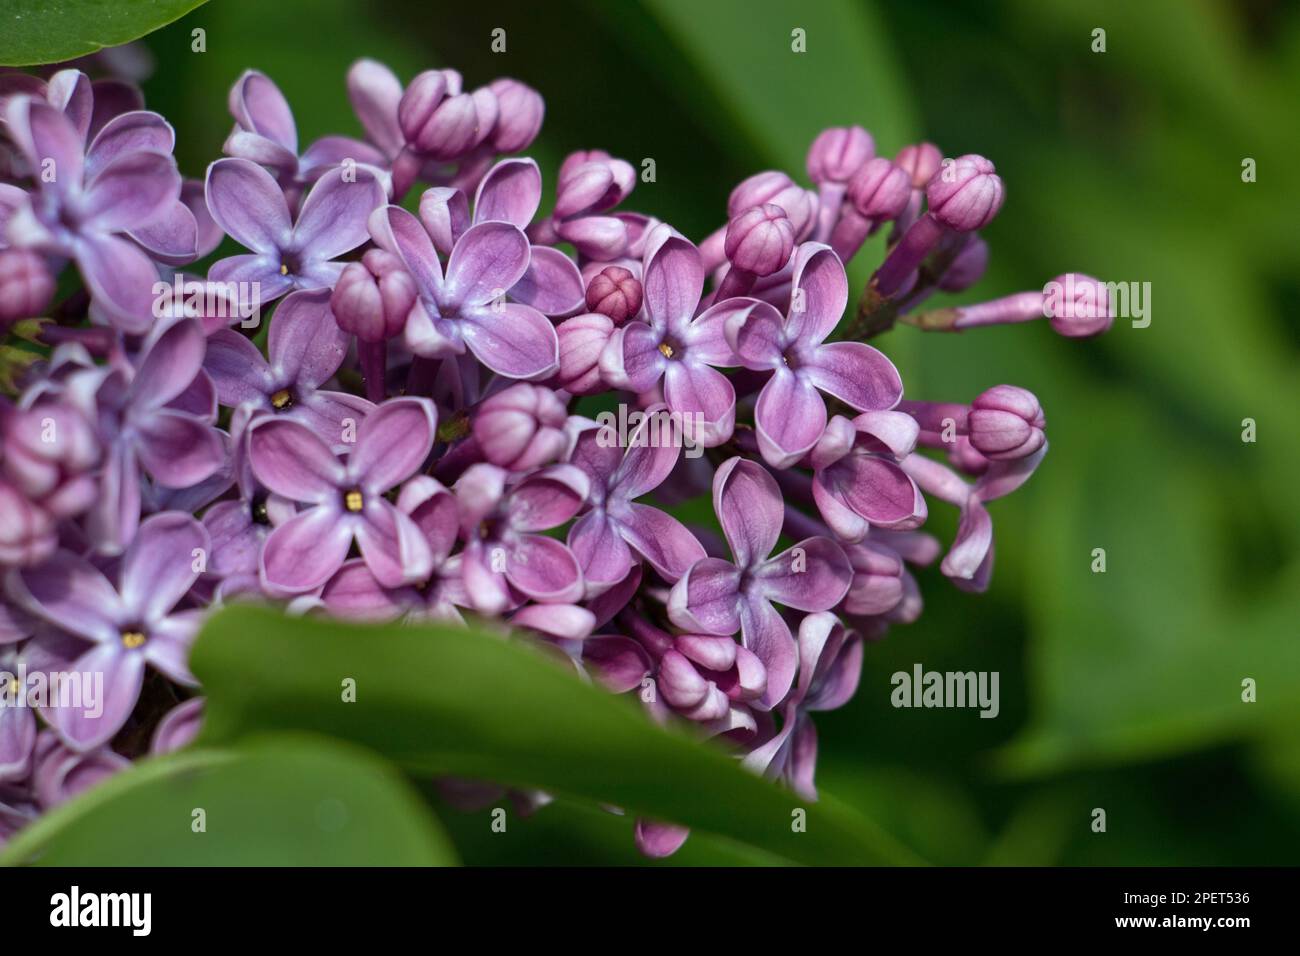 Winzige violette Blüten des Fliederbaumes, Syringa vulgaris, blühen im Frühling Frühsommer, Nahaufnahme auf einem natürlichen grünen Blatthintergrund Stockfoto